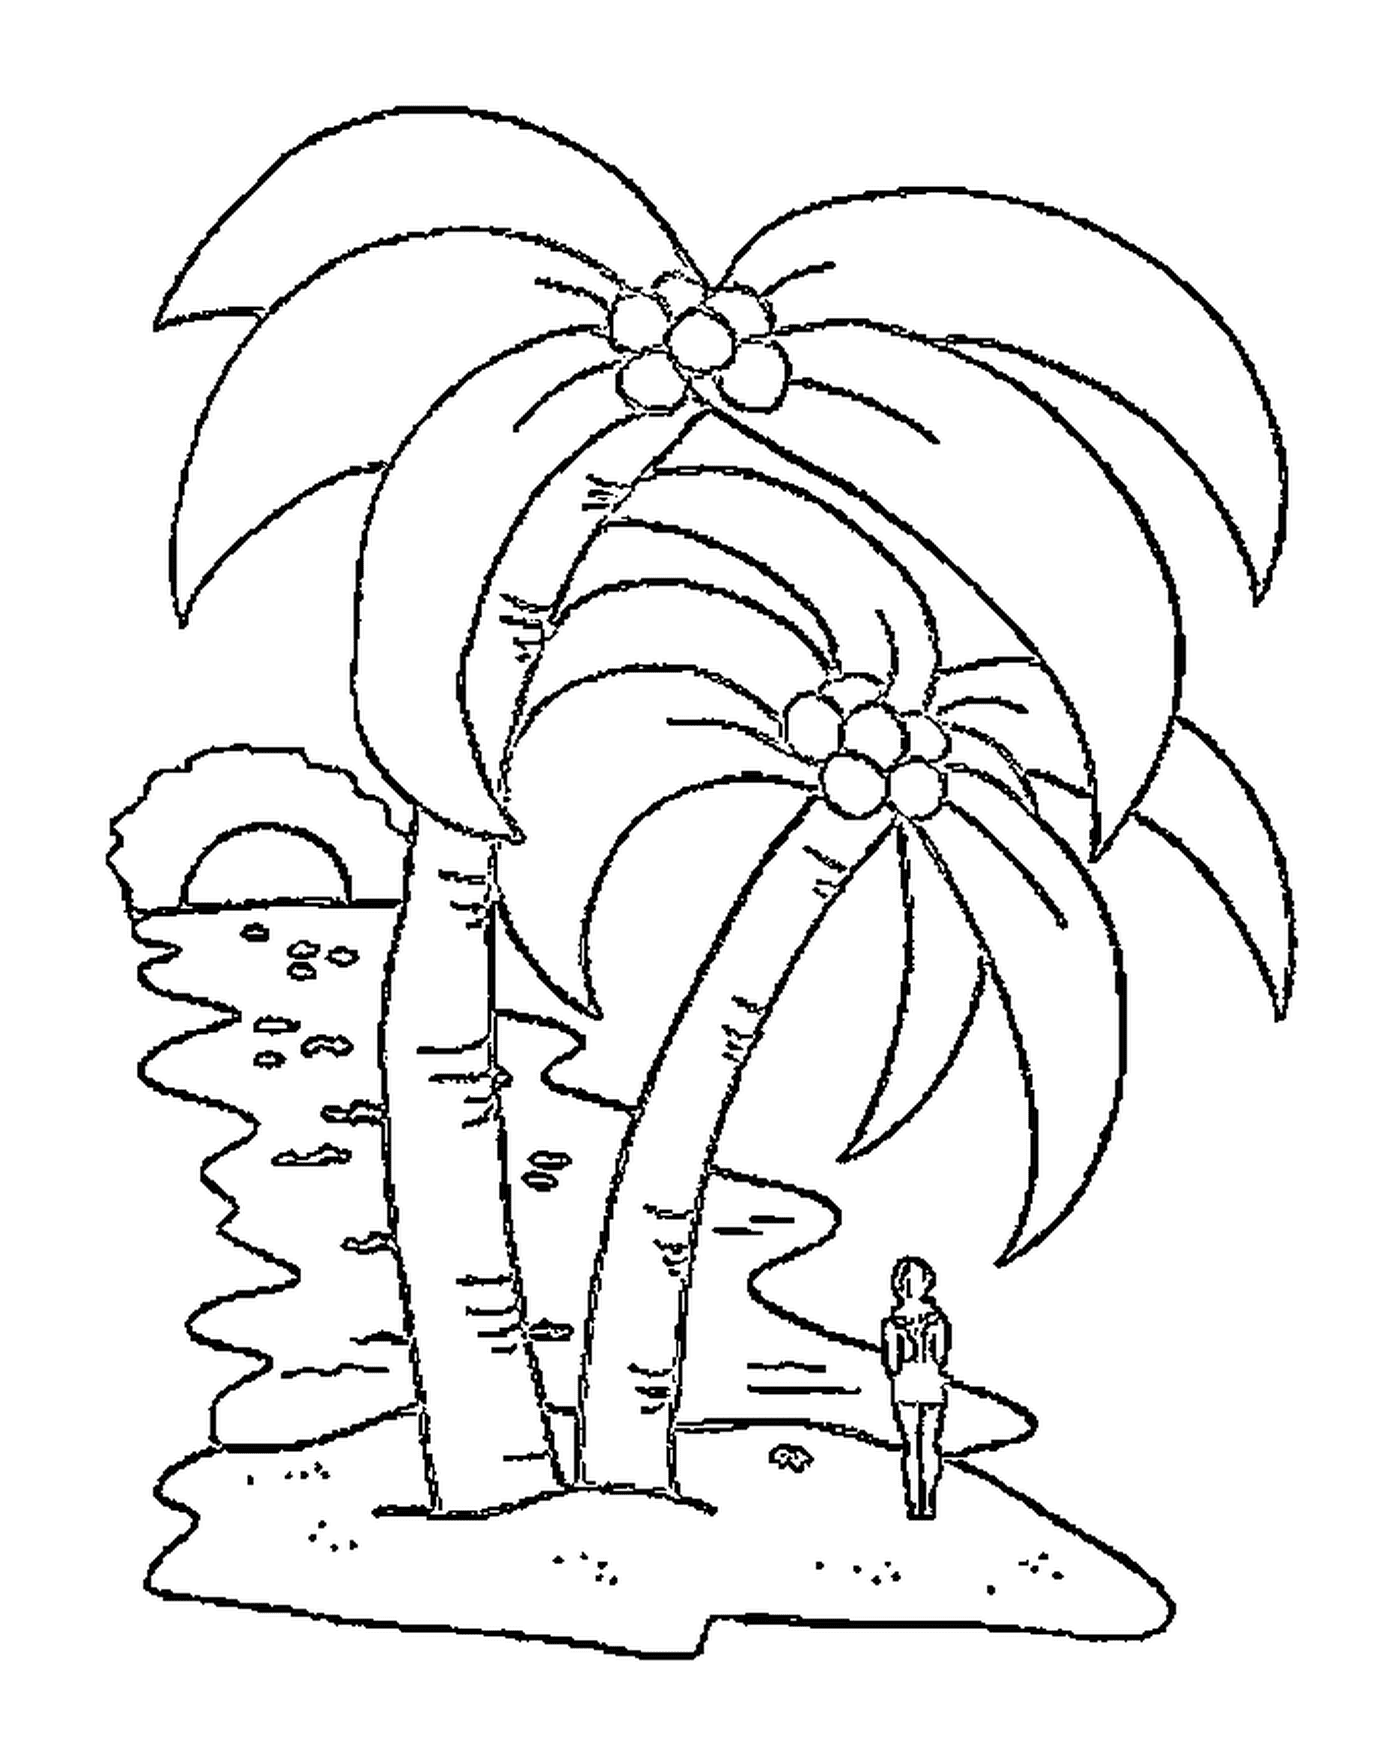  棕榈树2号,棕榈树2号,漂亮的棕榈树 